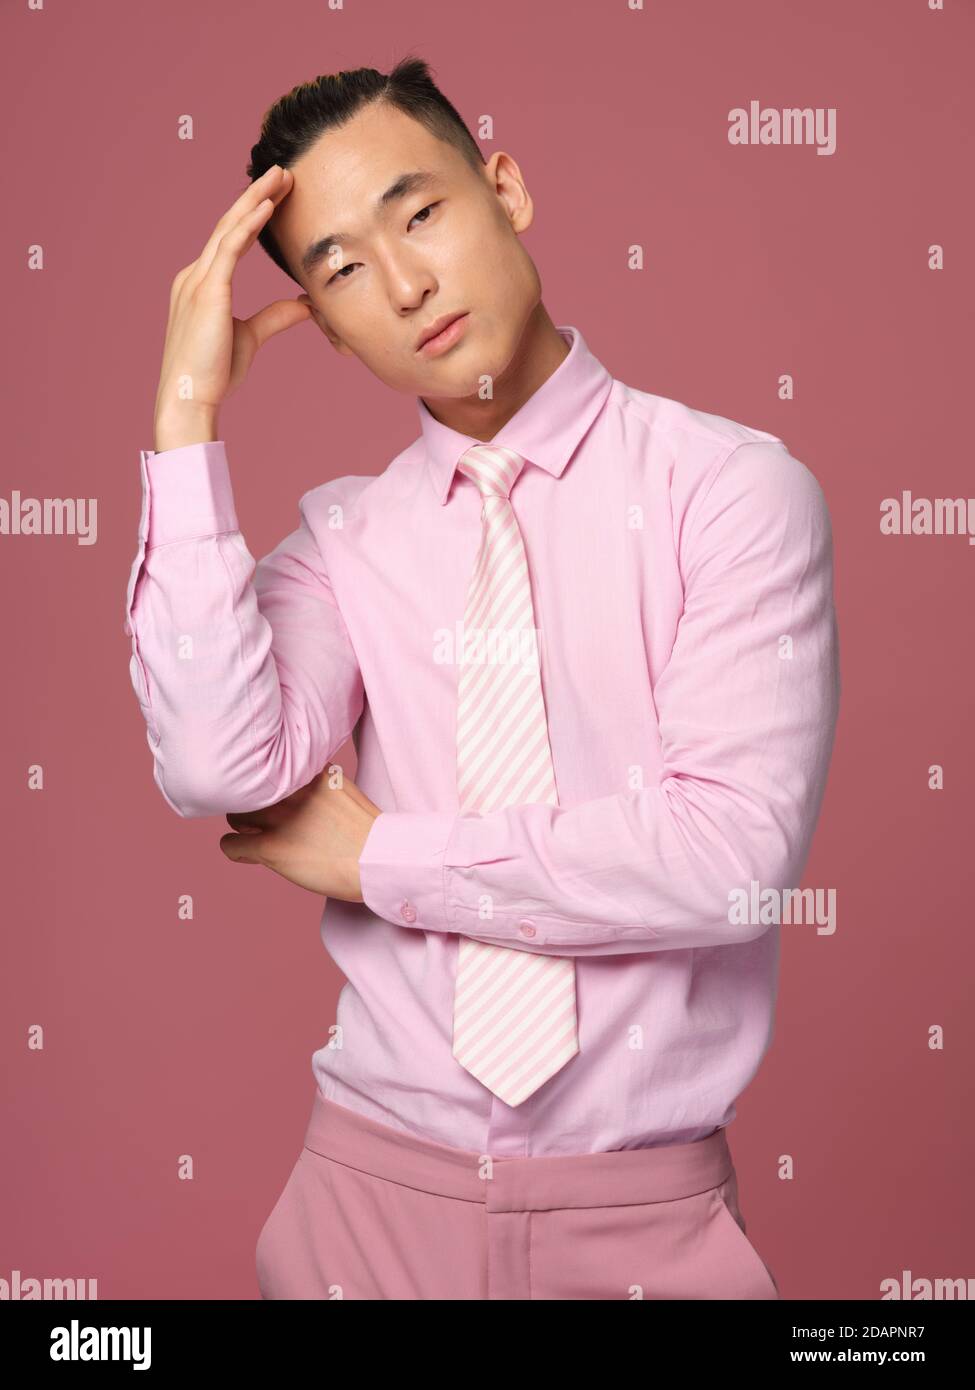 Homme d'aspect asiatique rose chemise cravate main sur la tête vue rognée  Photo Stock - Alamy